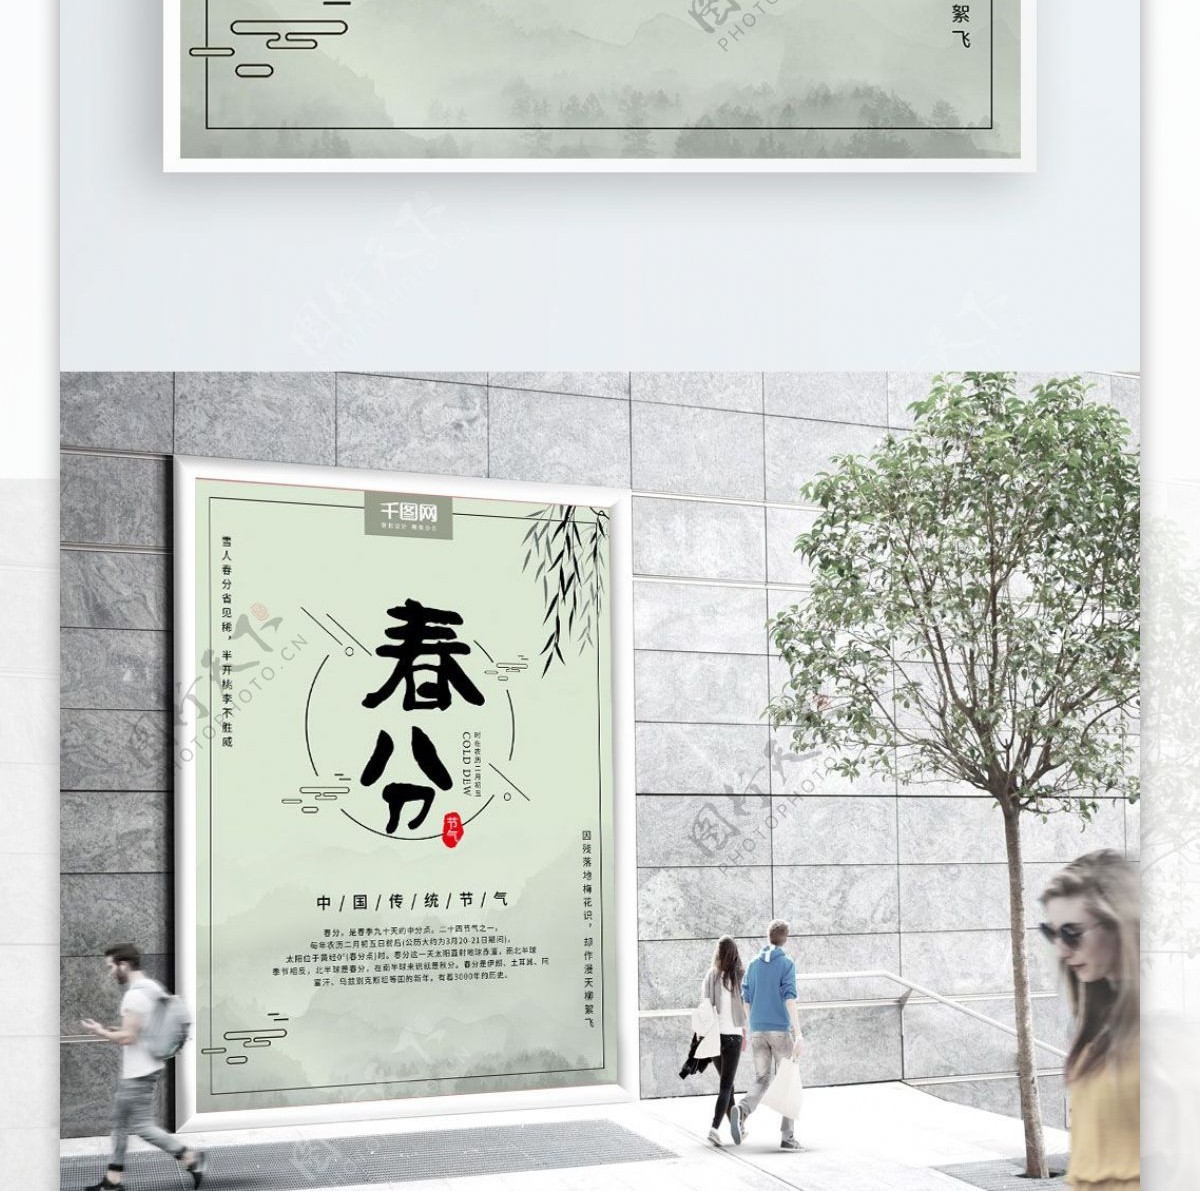 传统中国风二十四节气春分海报